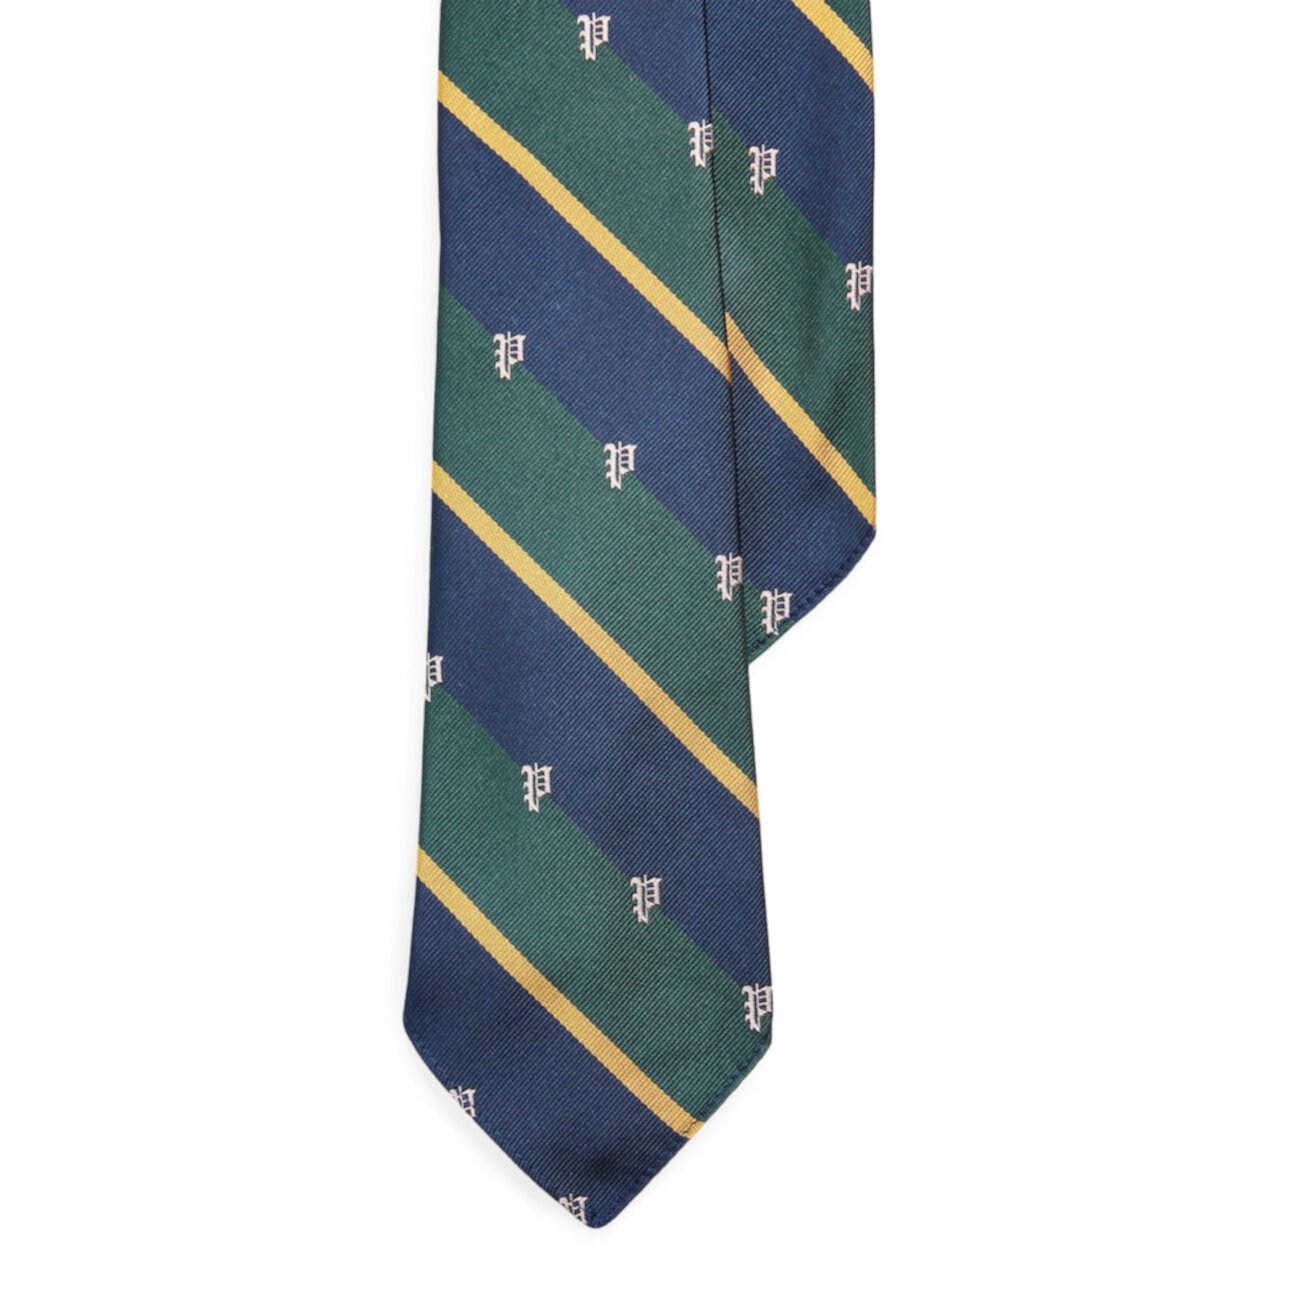 Размер клубного галстука в полоску в винтажном стиле Ralph Lauren